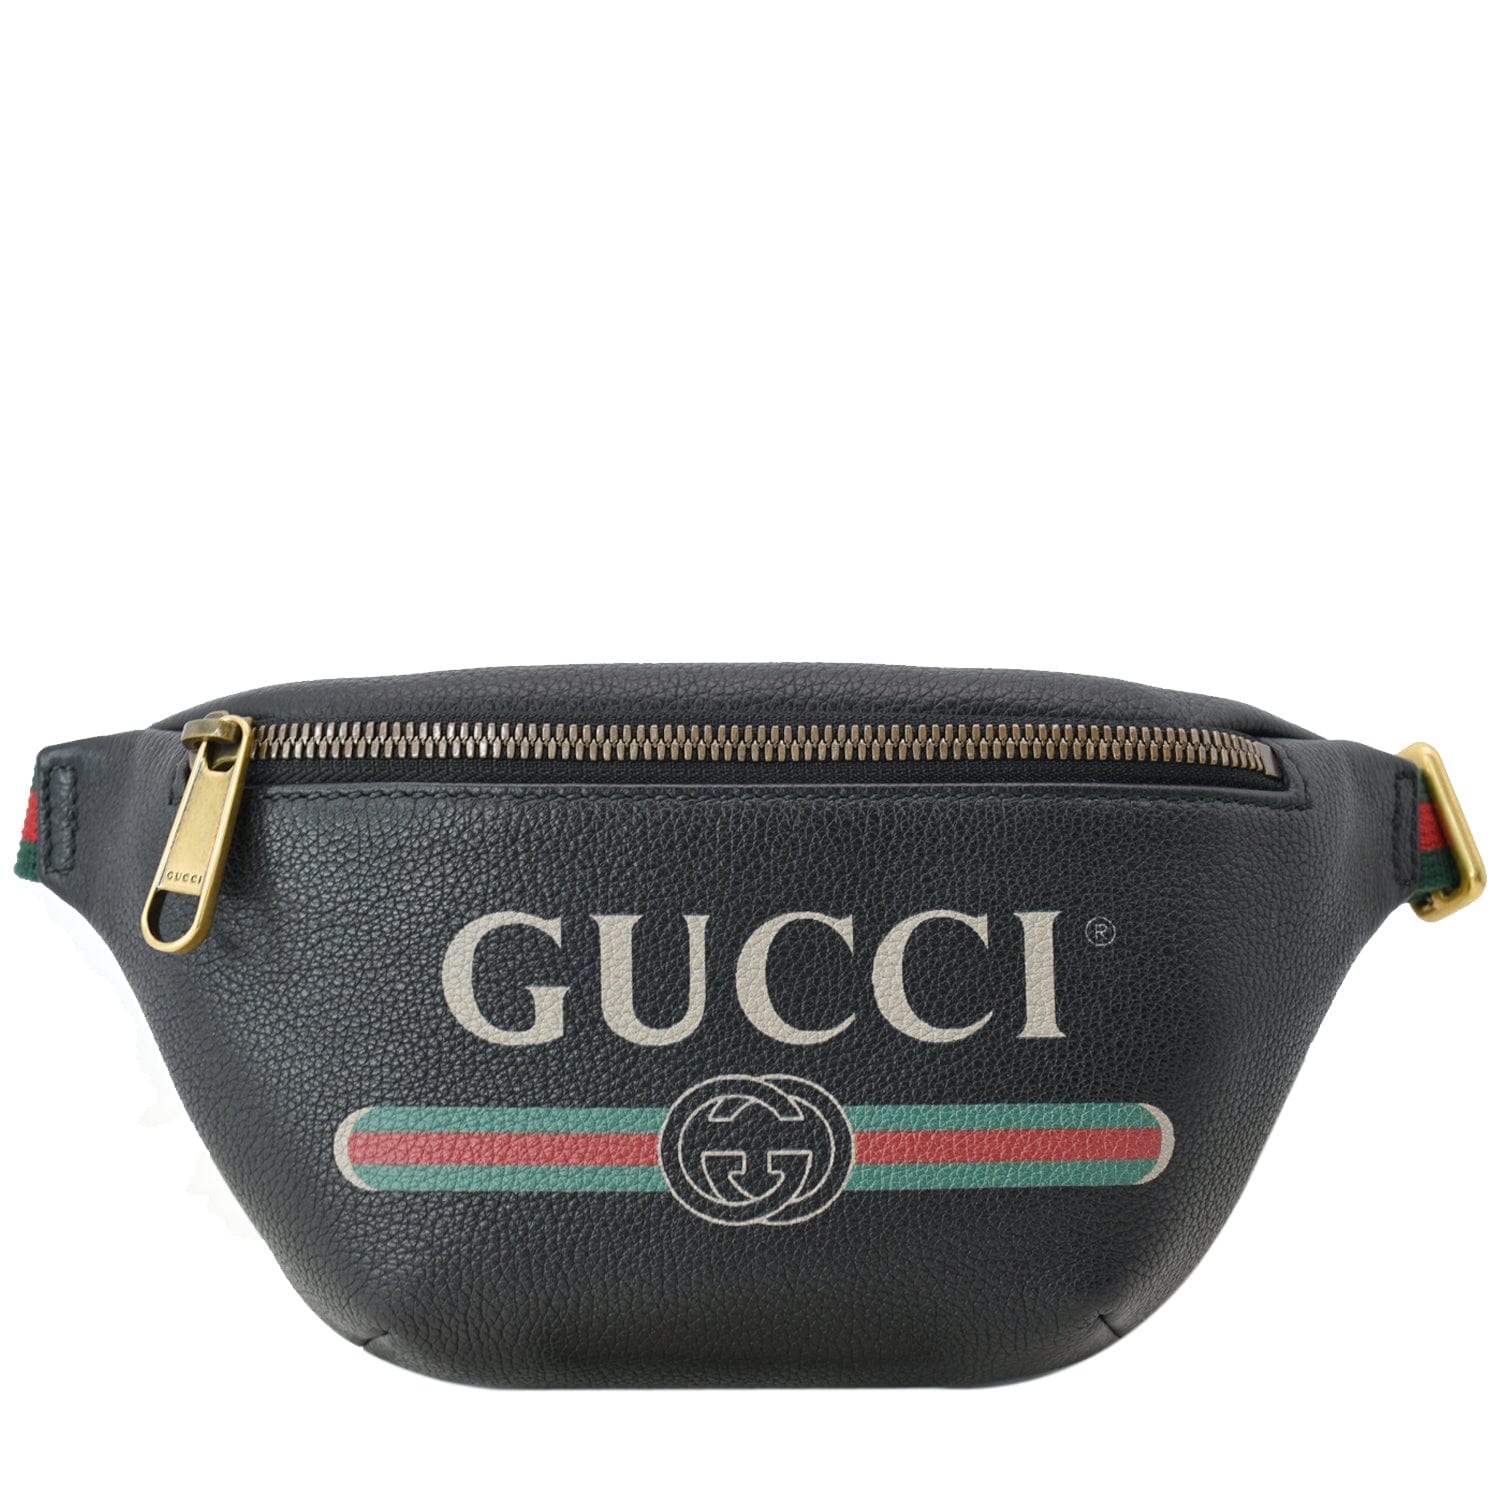 Gucci - Black Leather Logo Belt Bag